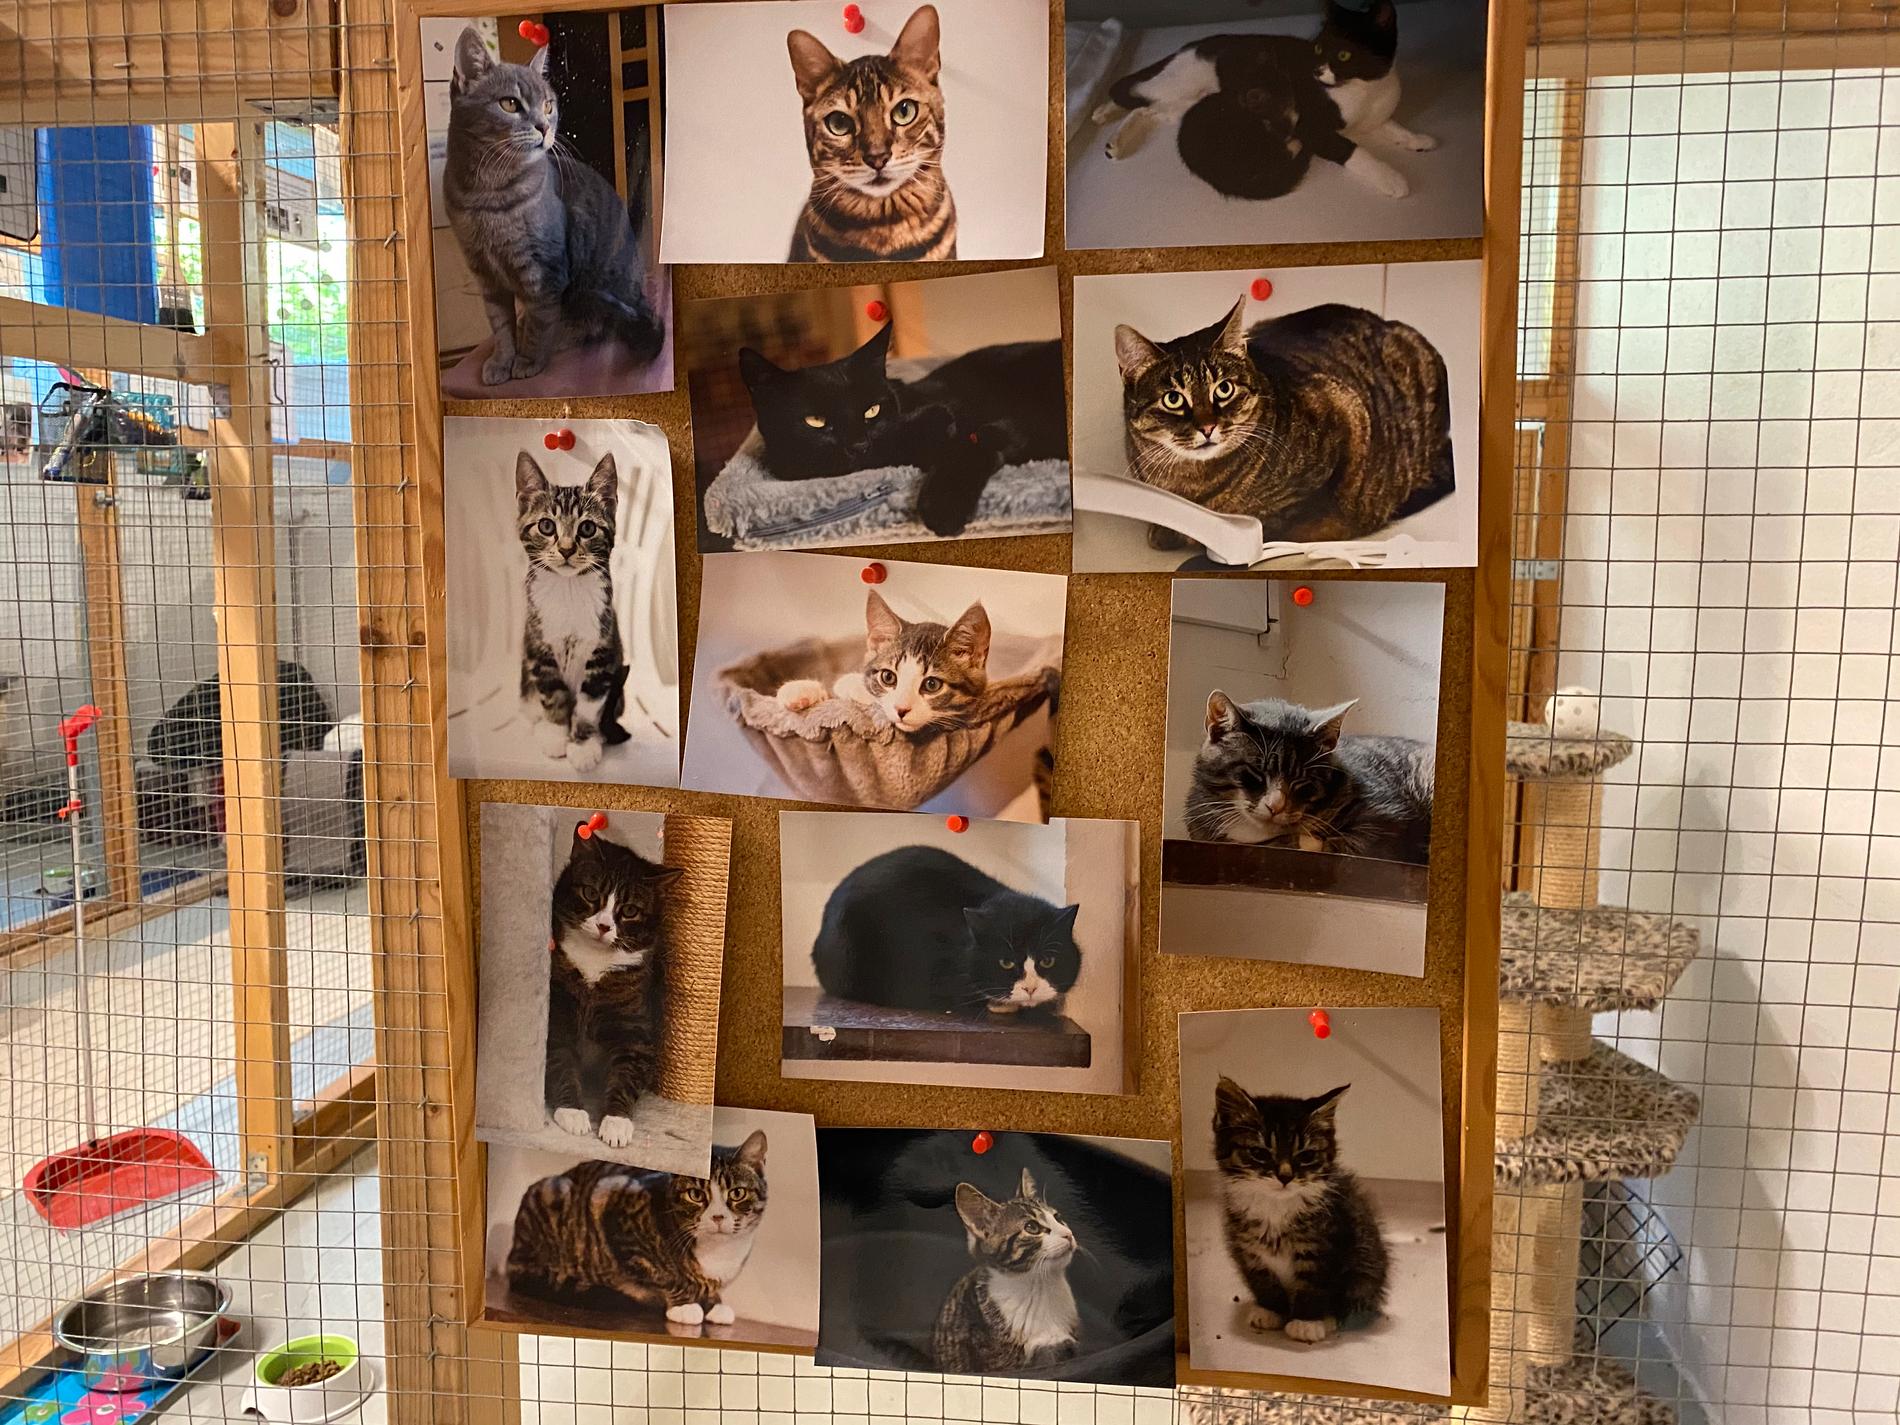 Överallt på väggarna finns bilder från katter som bott på hemmet förut.